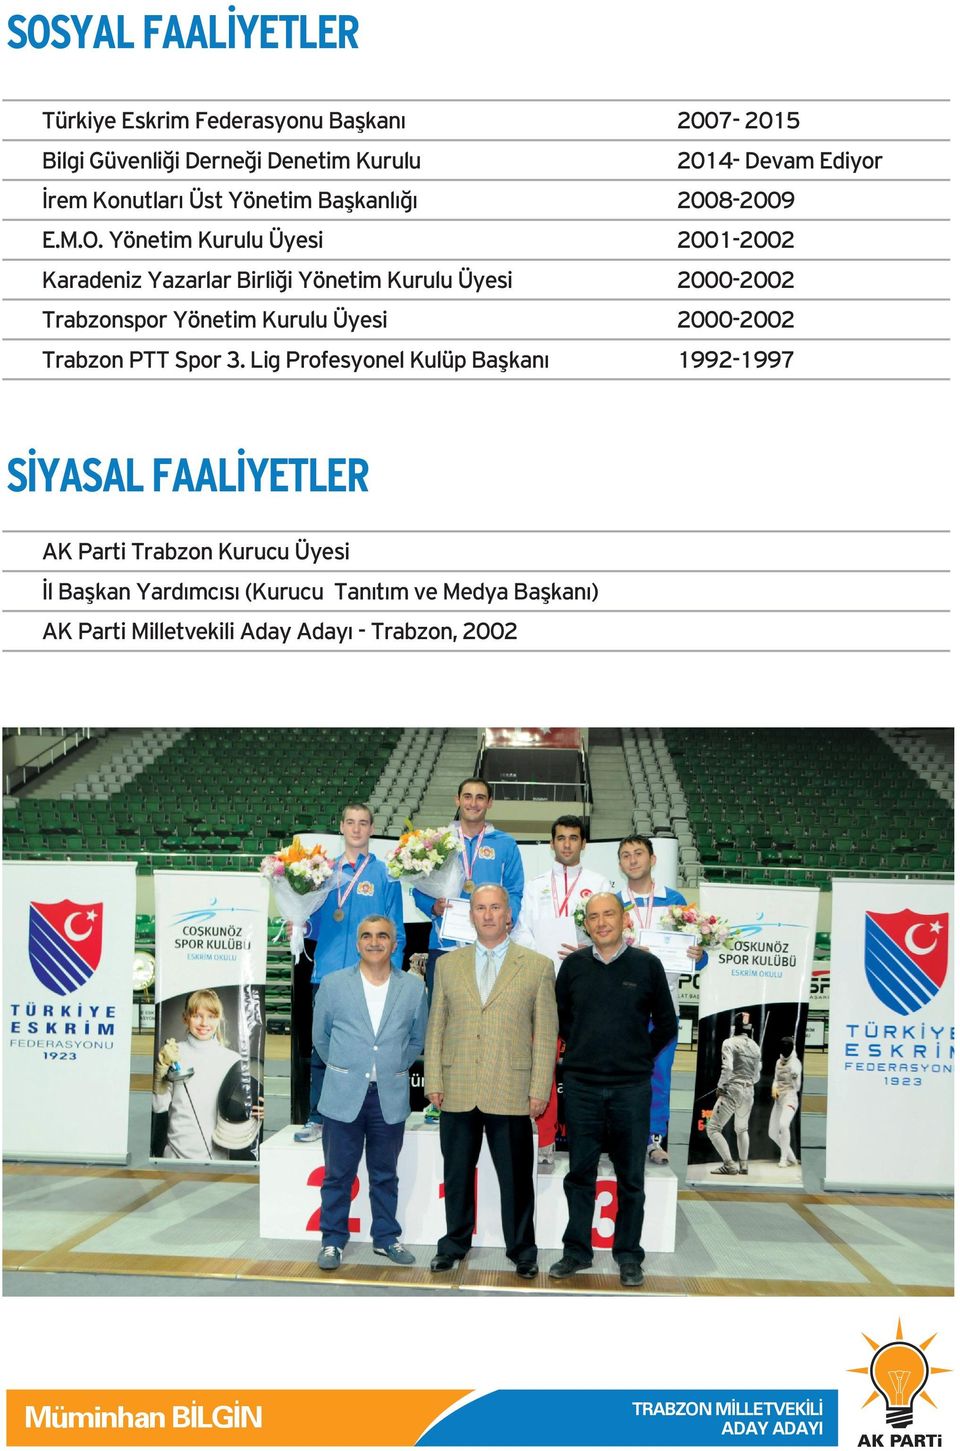 Yönetim Kurulu Üyesi 2001-2002 Karadeniz Yazarlar Birliği Yönetim Kurulu Üyesi 2000-2002 Trabzonspor Yönetim Kurulu Üyesi